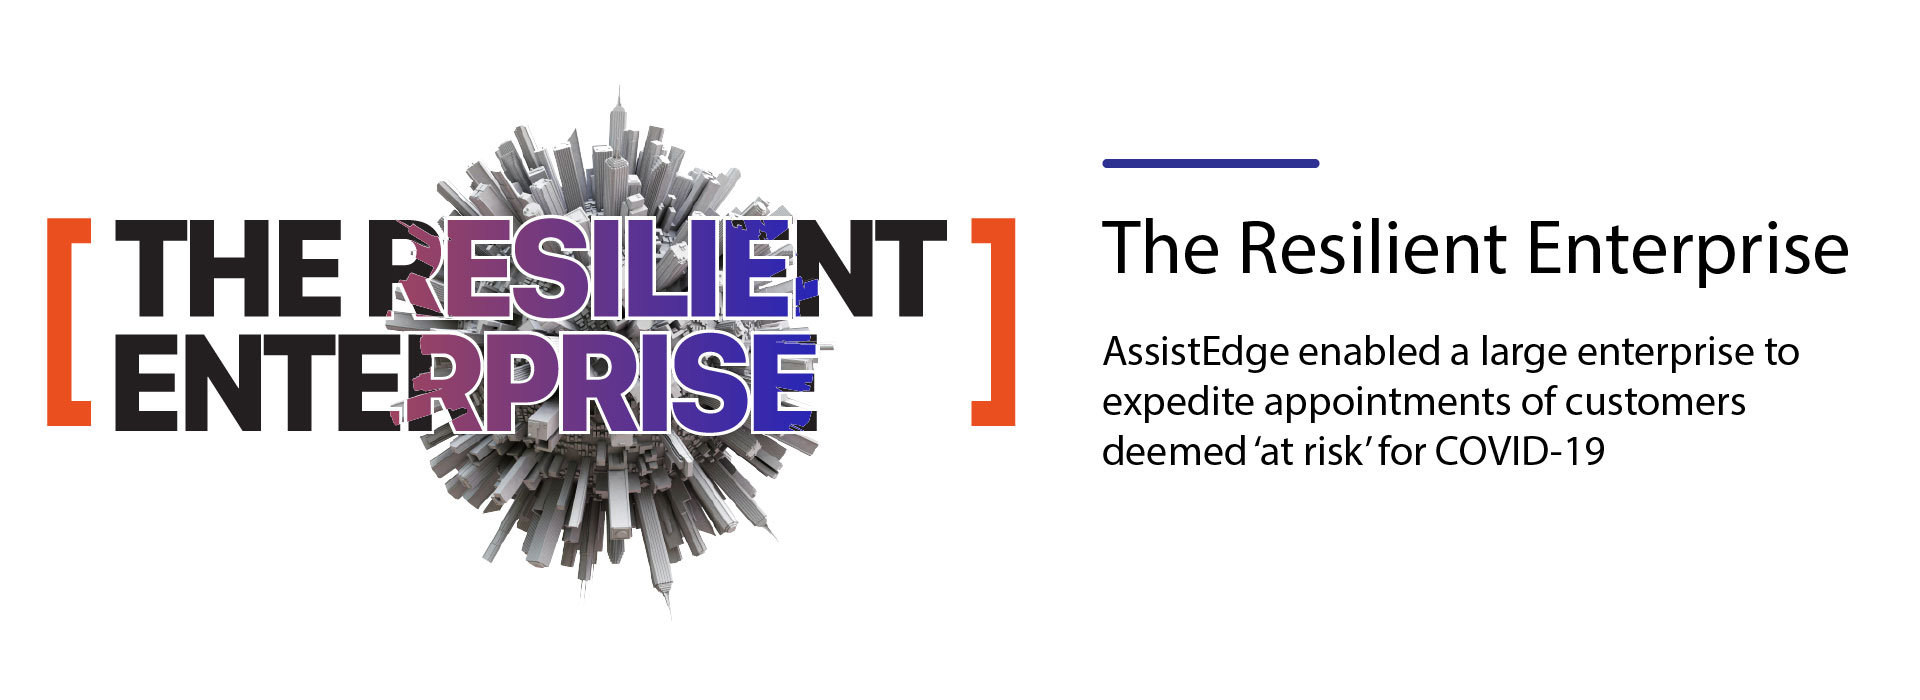 Resilient-Enterprise-covid-19-cases-banner